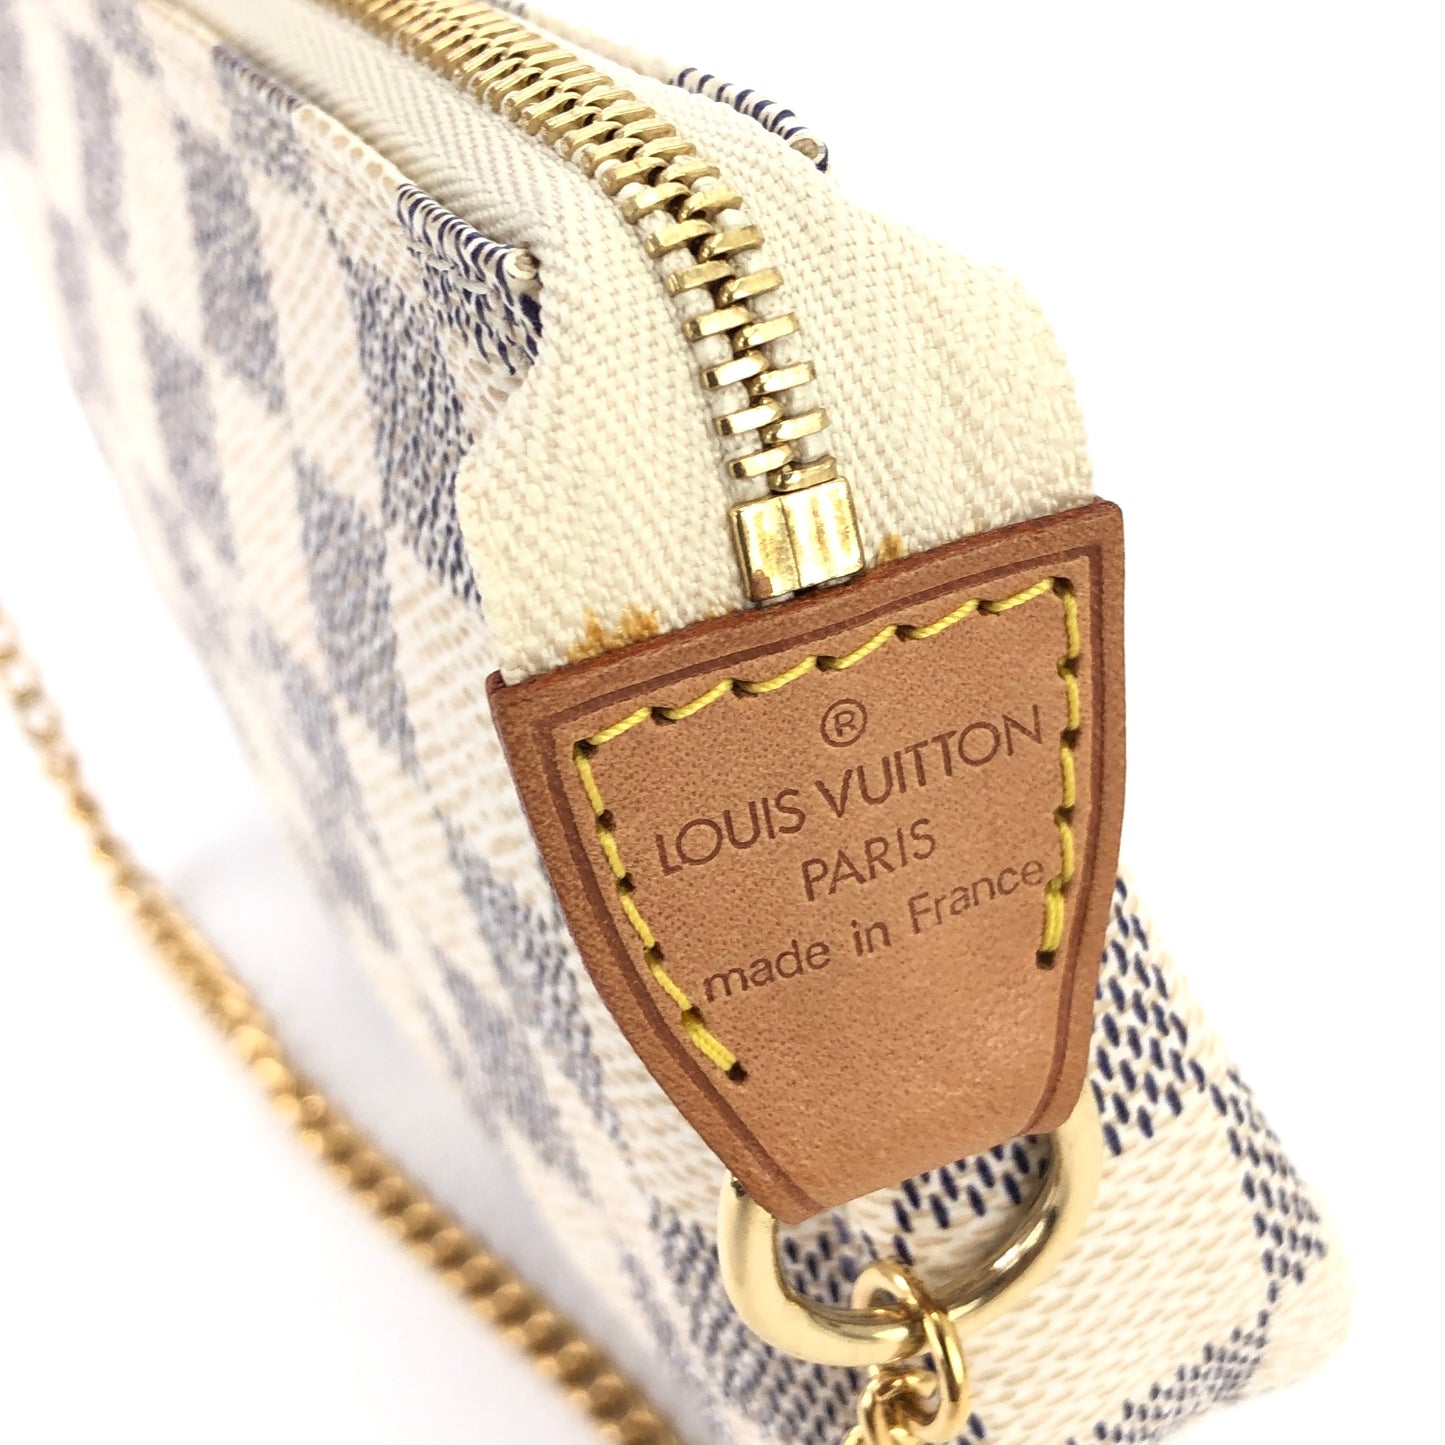 LOUIS VUITTON Damier PVC N58010 Mini Pochette Accessoire Handbag